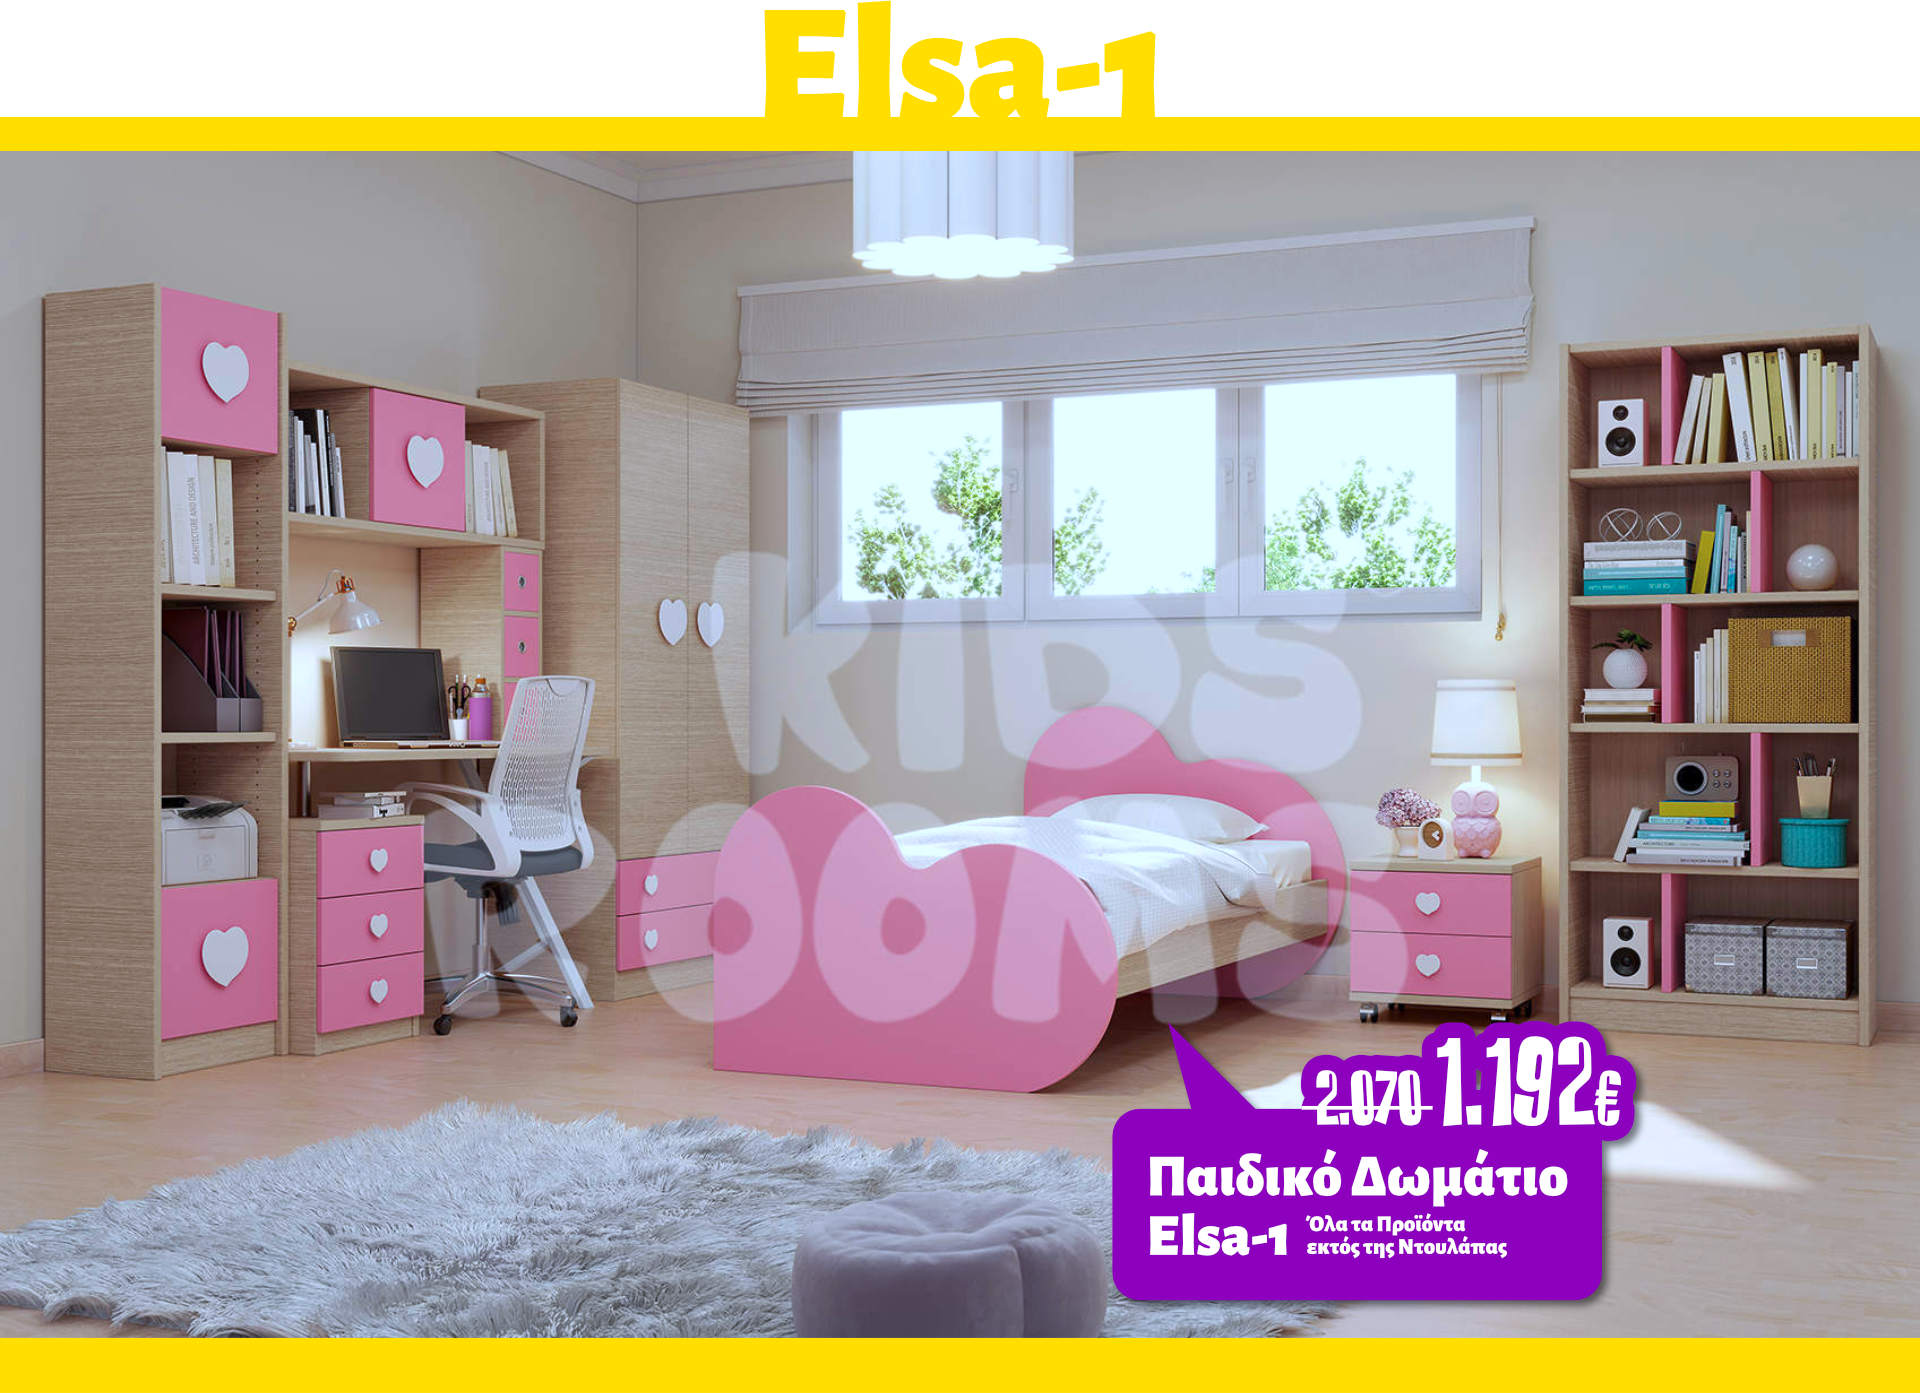 Προσφορά Παιδικό Δωμάτιο Elsa-1 από 2.070€ - 1.192€ (Όλα τα Προϊόντα εκτός της Ντουλάπας).